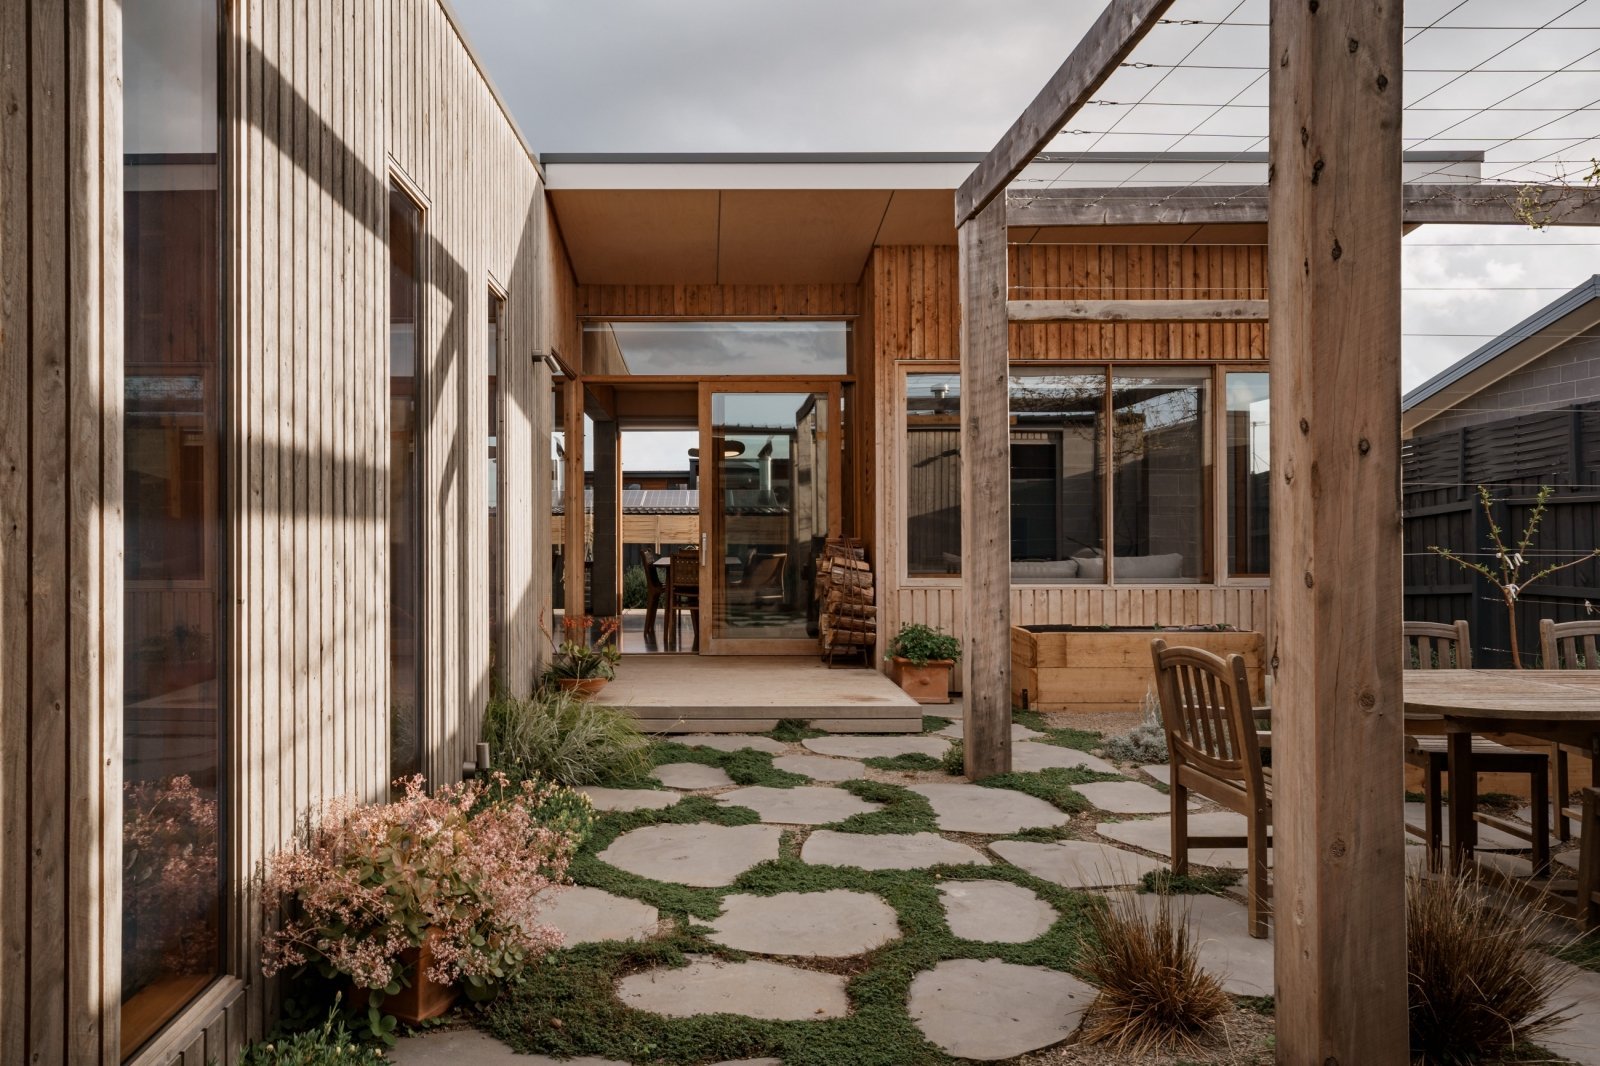 Udržitelný dům z betonu a cypřišového dřeva